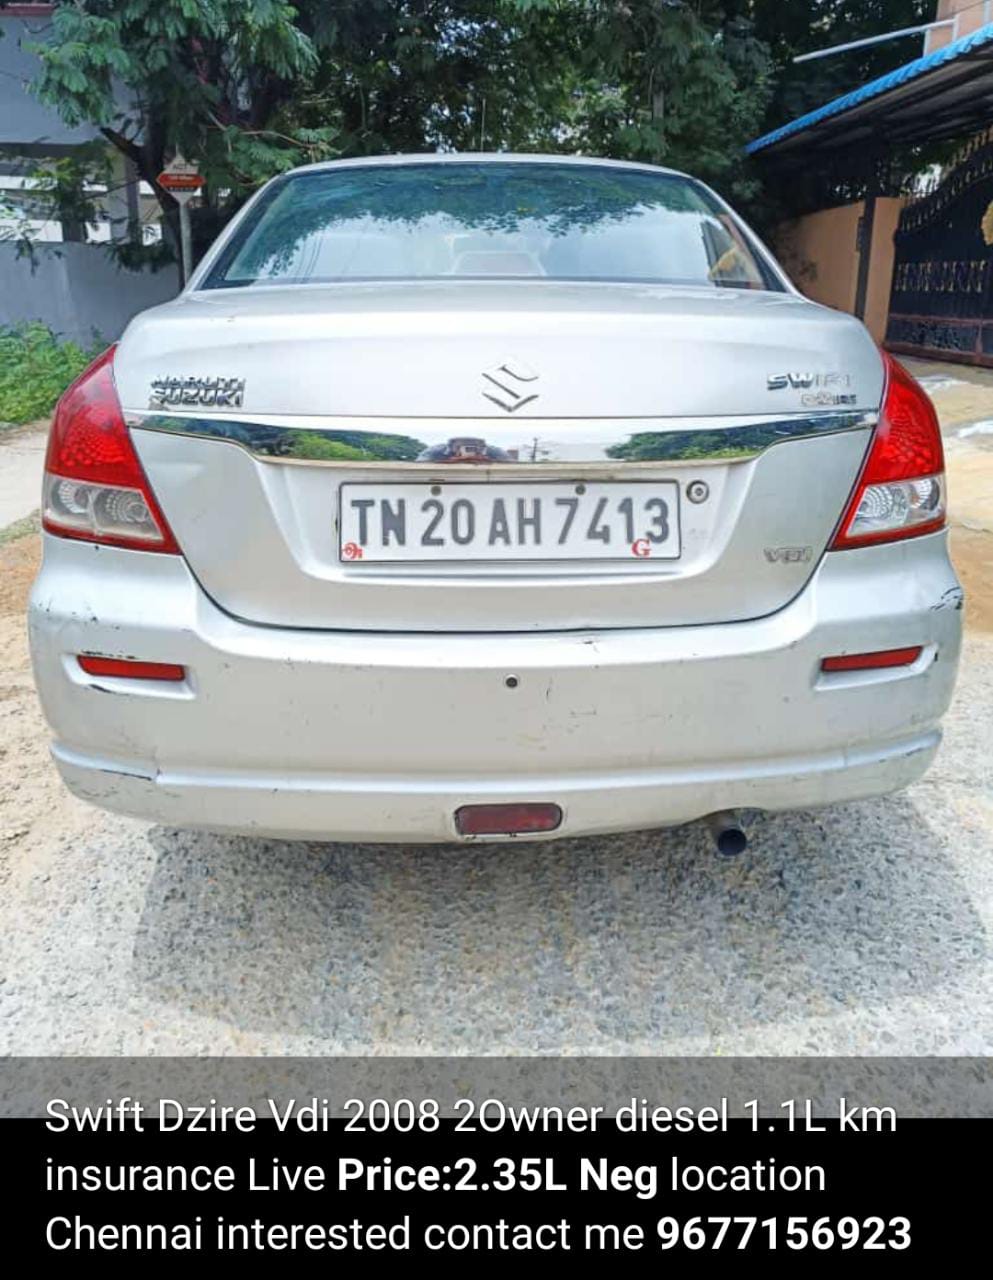 4243-for-sale-Maruthi-Suzuki-DZire-Diesel-Second-Owner-2008-TN-registered-rs-235000